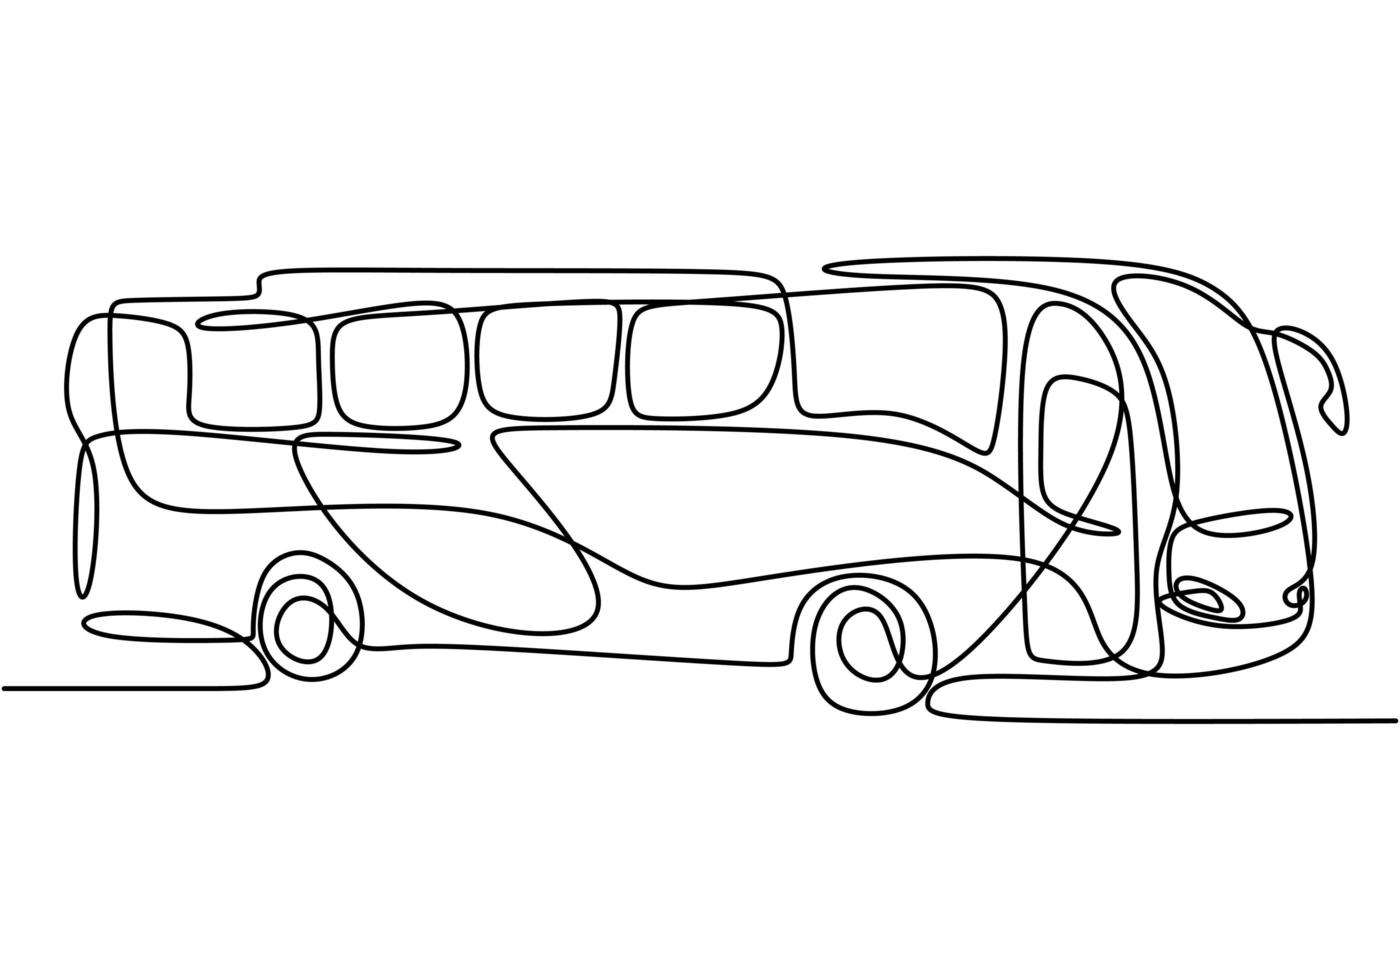 singola linea continua di scuolabus. regolarmente utilizzato per il trasporto degli studenti. torna al concetto di scuola isolato su sfondo bianco. stile minimalista. illustrazione di disegno vettoriale